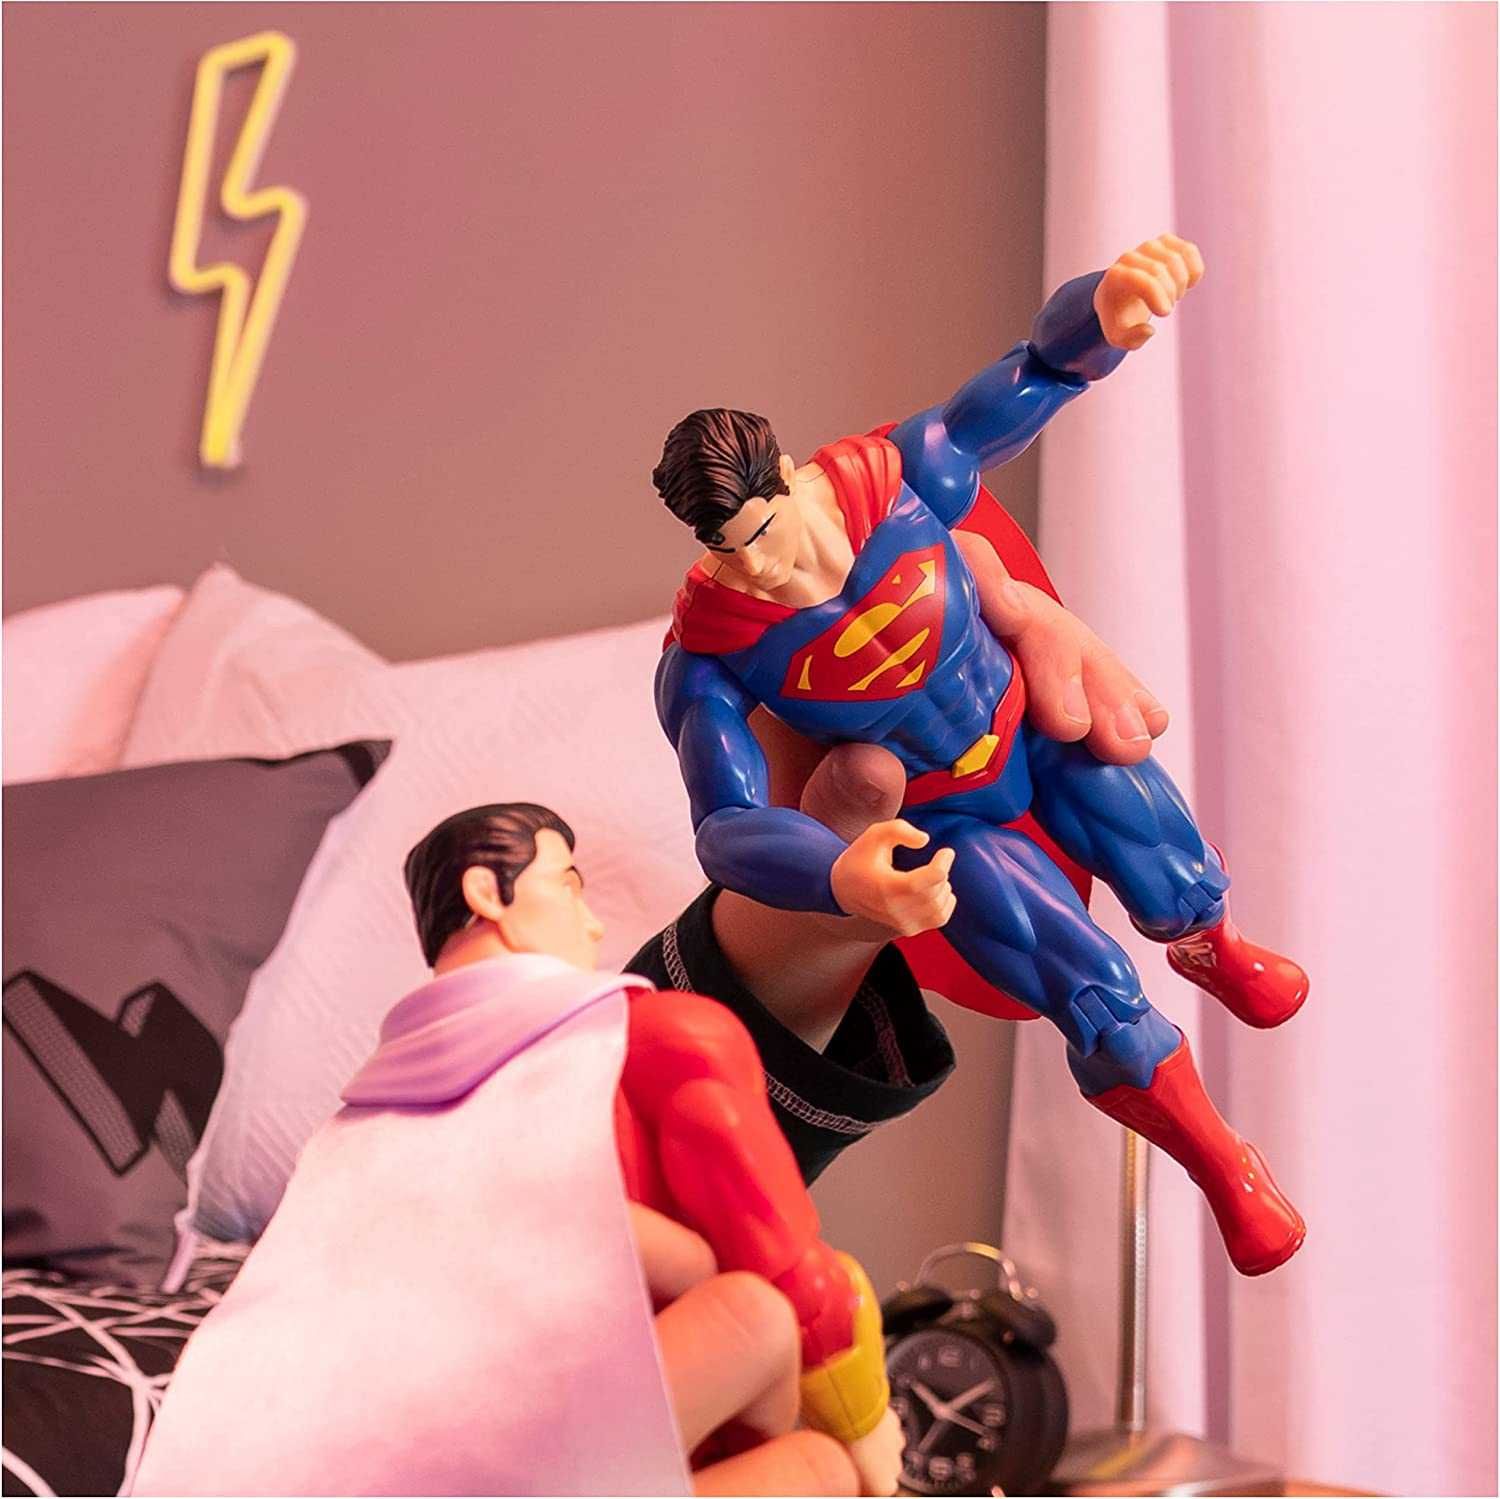 Супермен, Флеш - 30см ігрові екшн фігурки. Оригінал Superman, Flash